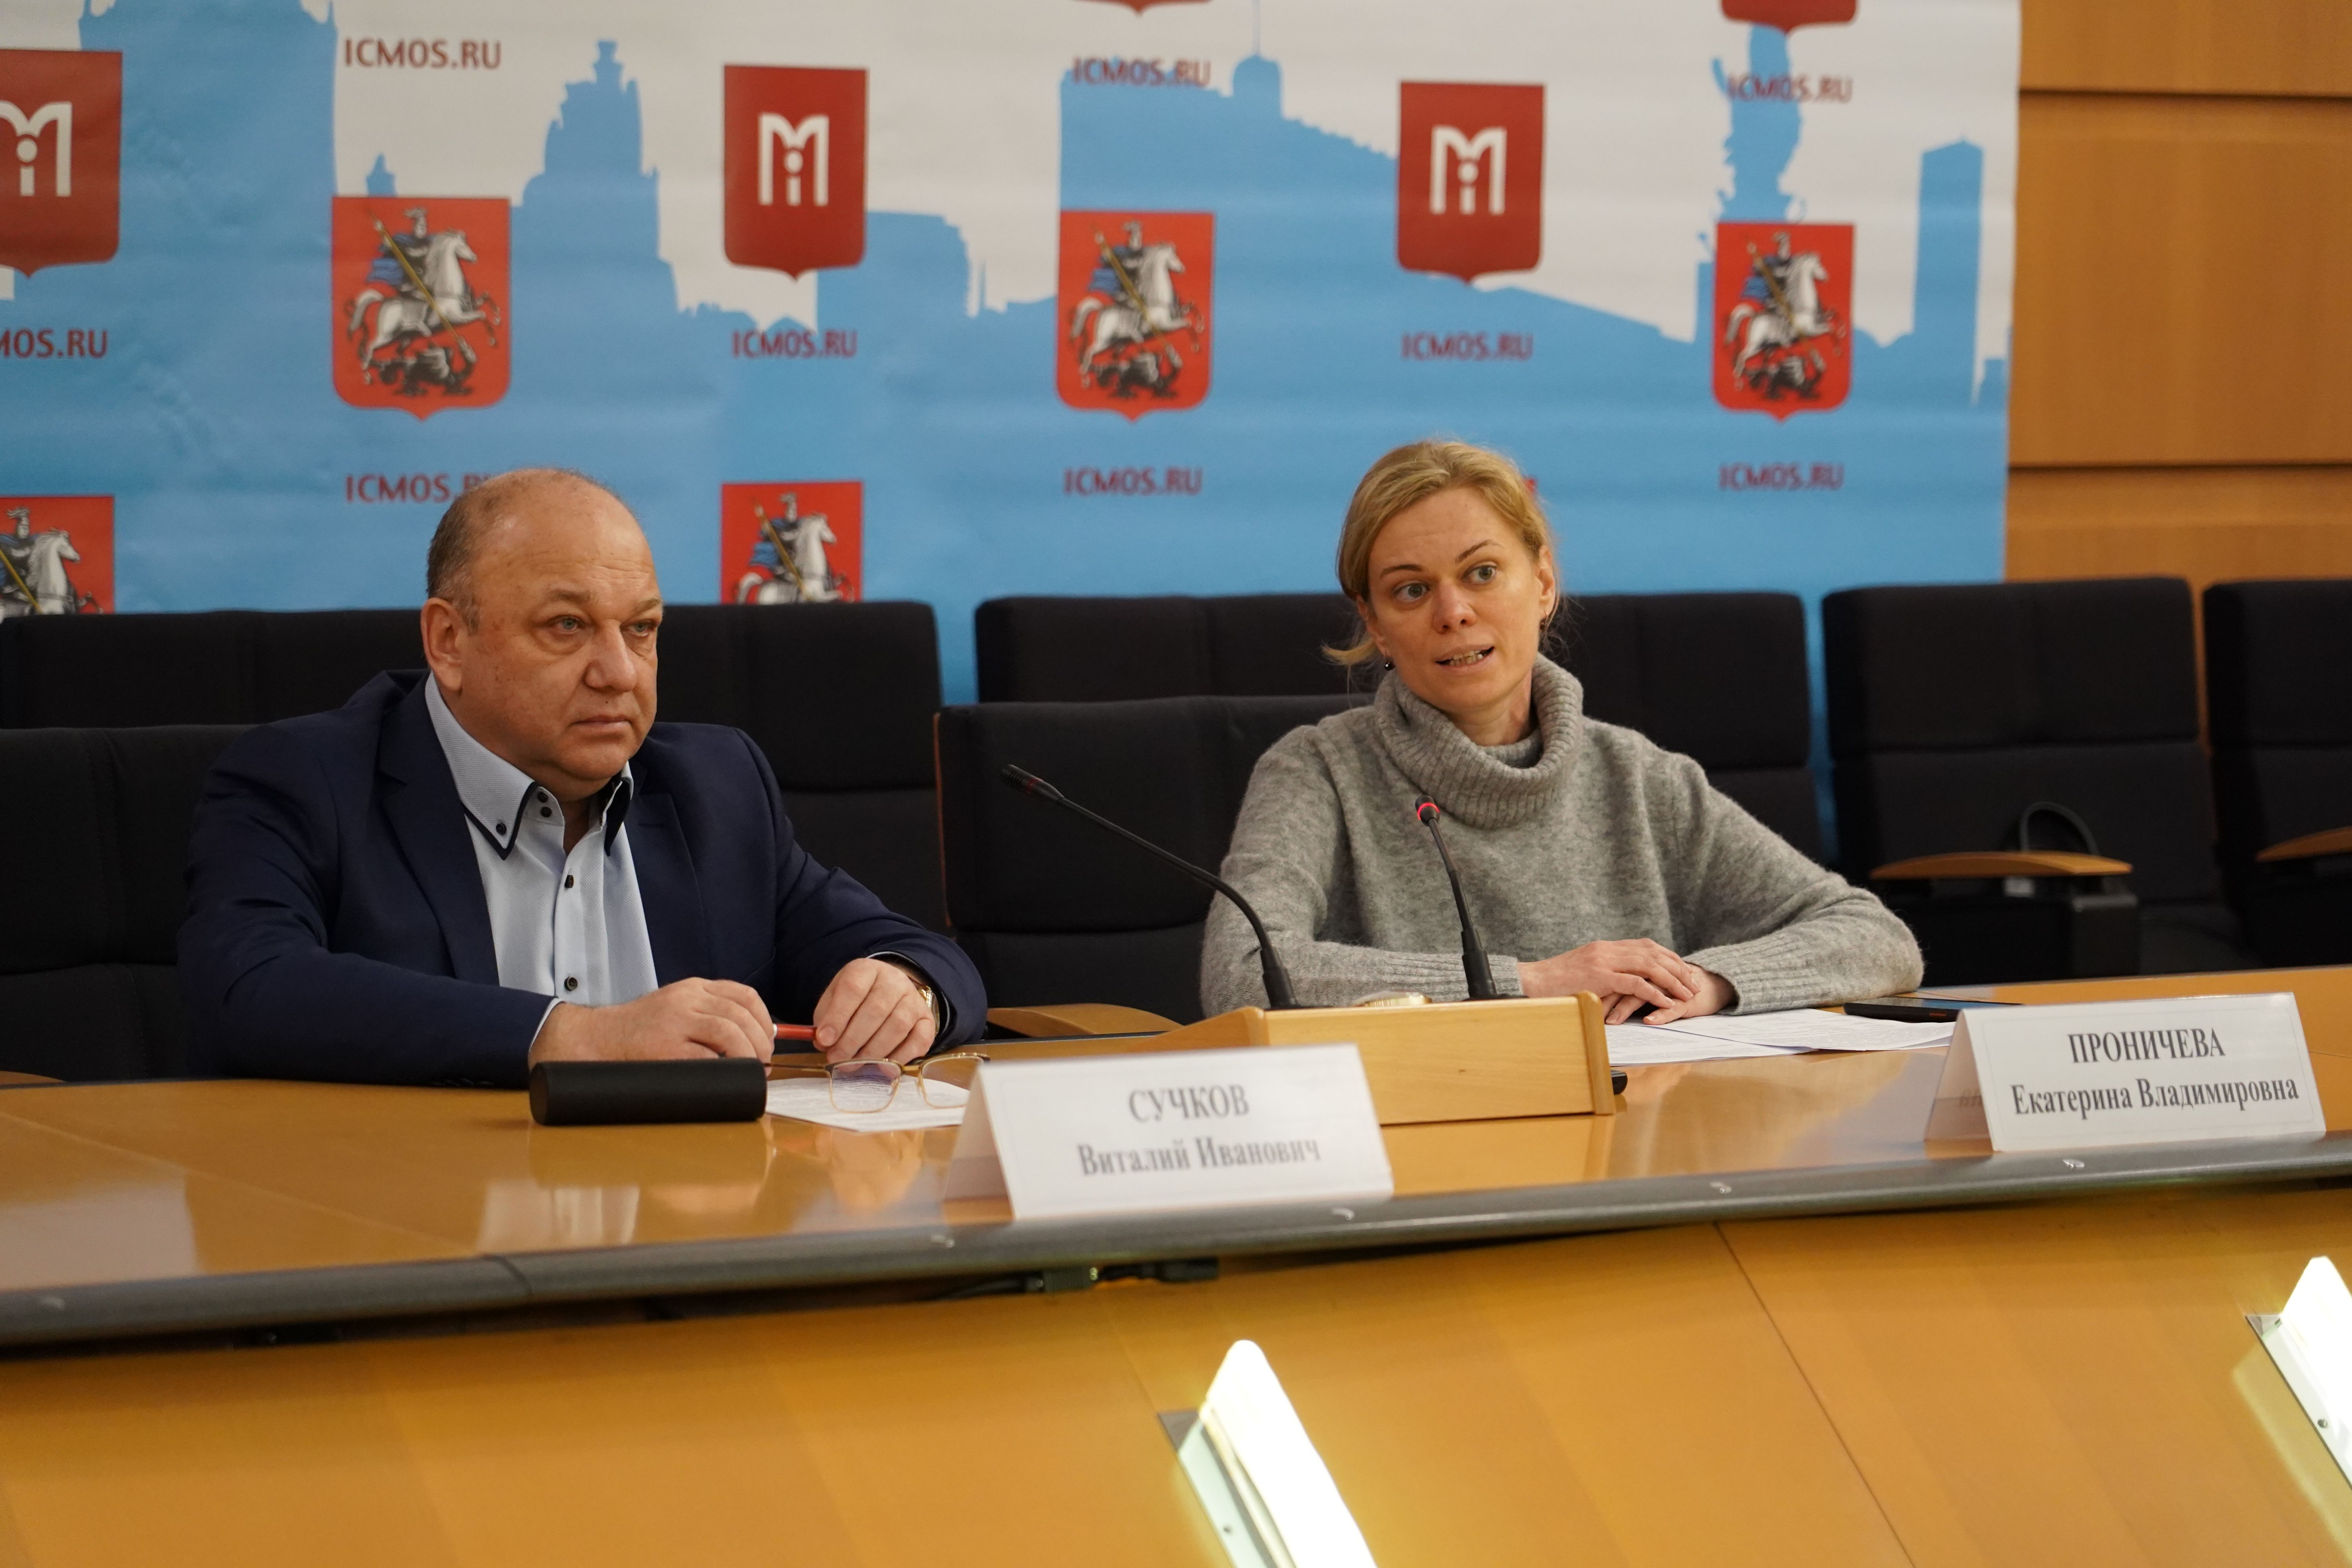 Пресс-конференция о приеме детей из регионов России на новогодние праздники состоялась в Москве